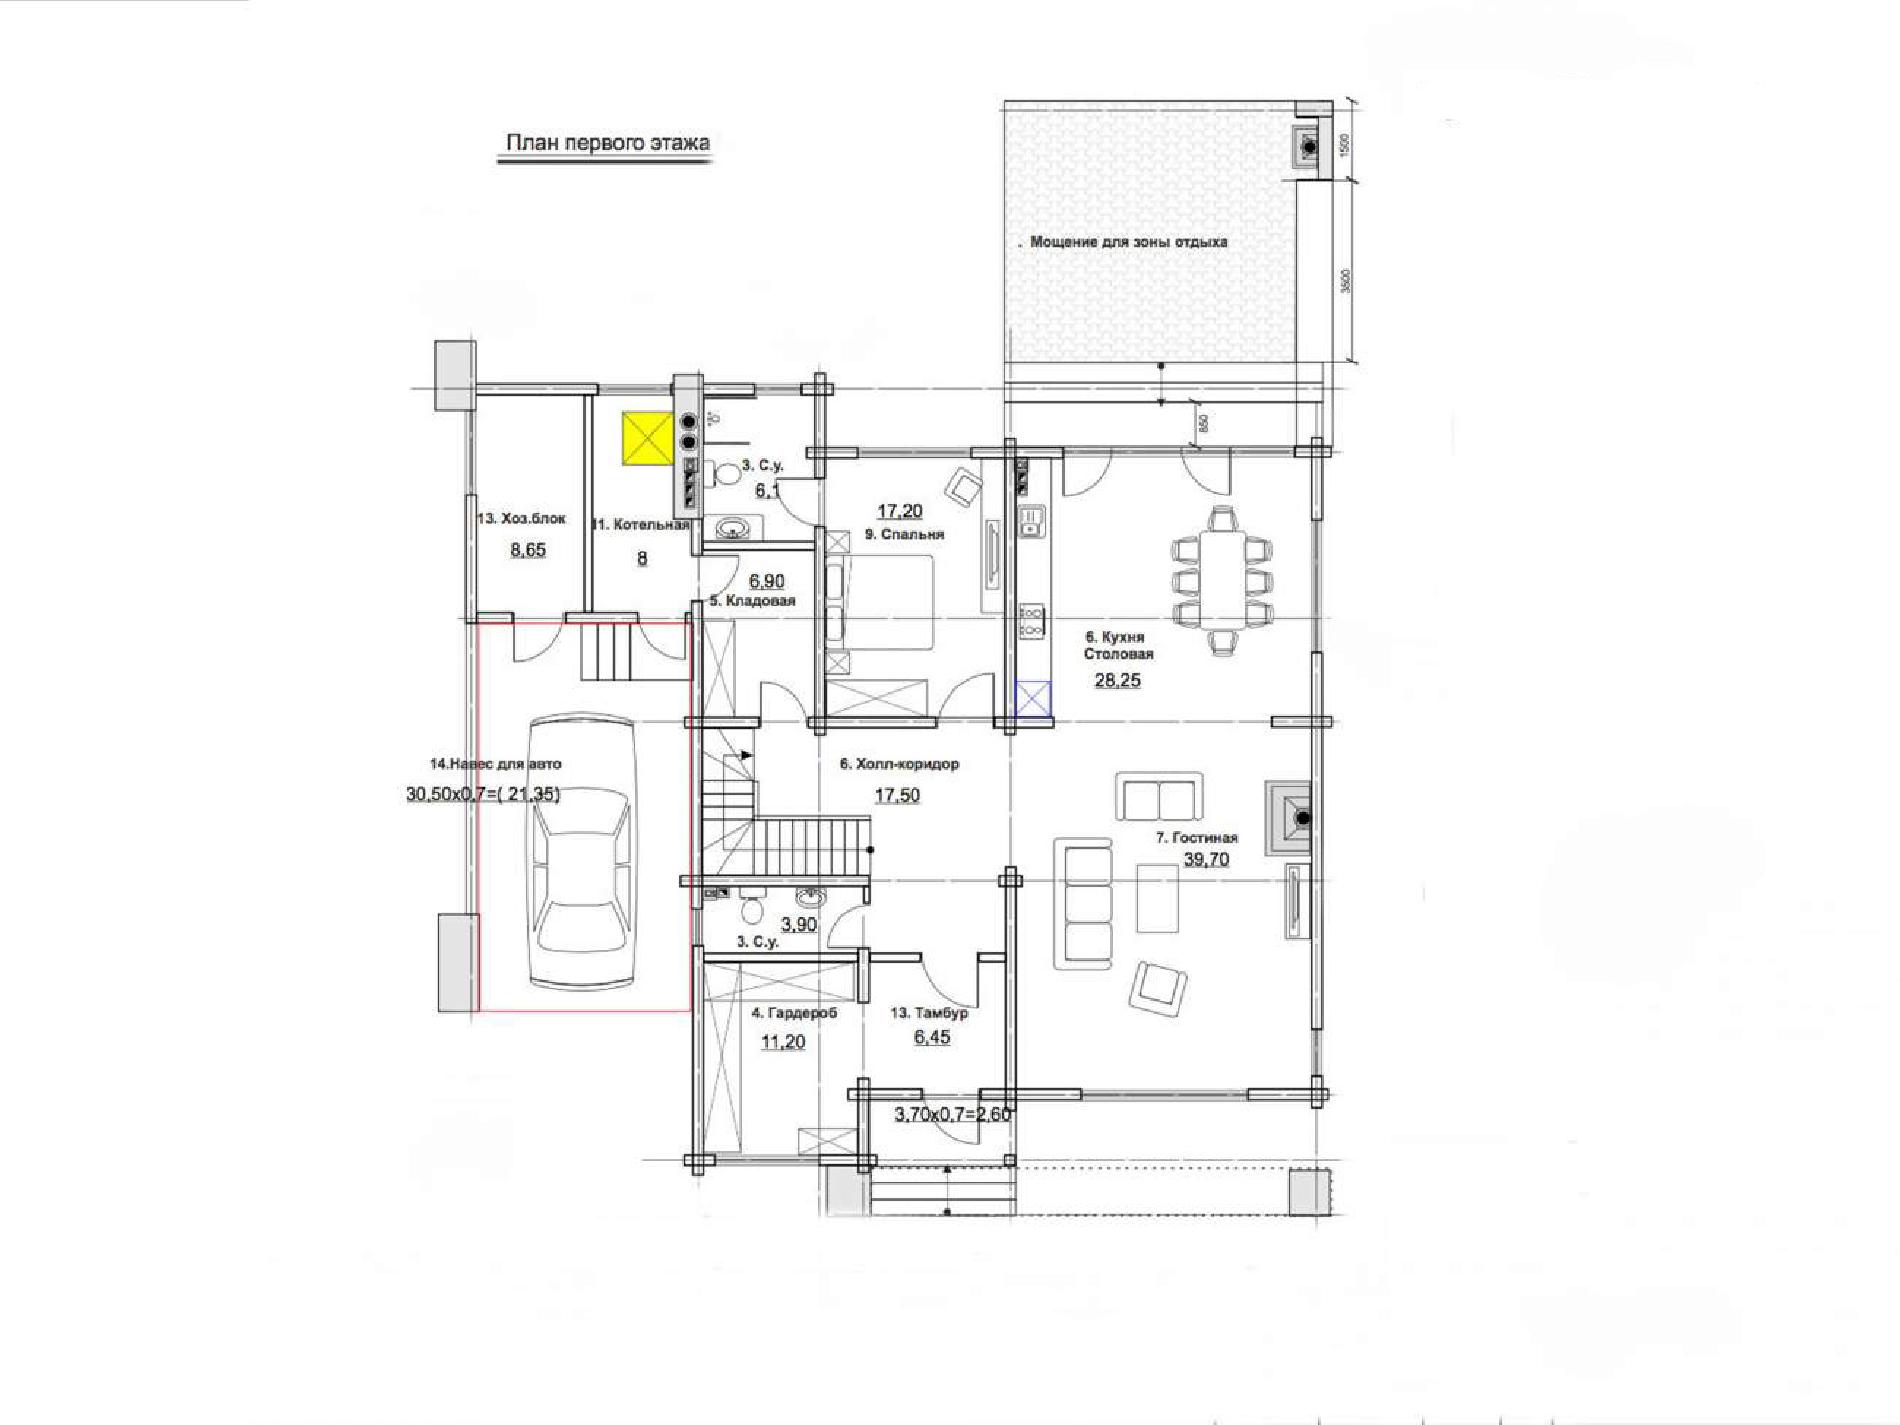 Планировка проекта дома №rh-339 rh-339 (1)p.jpg